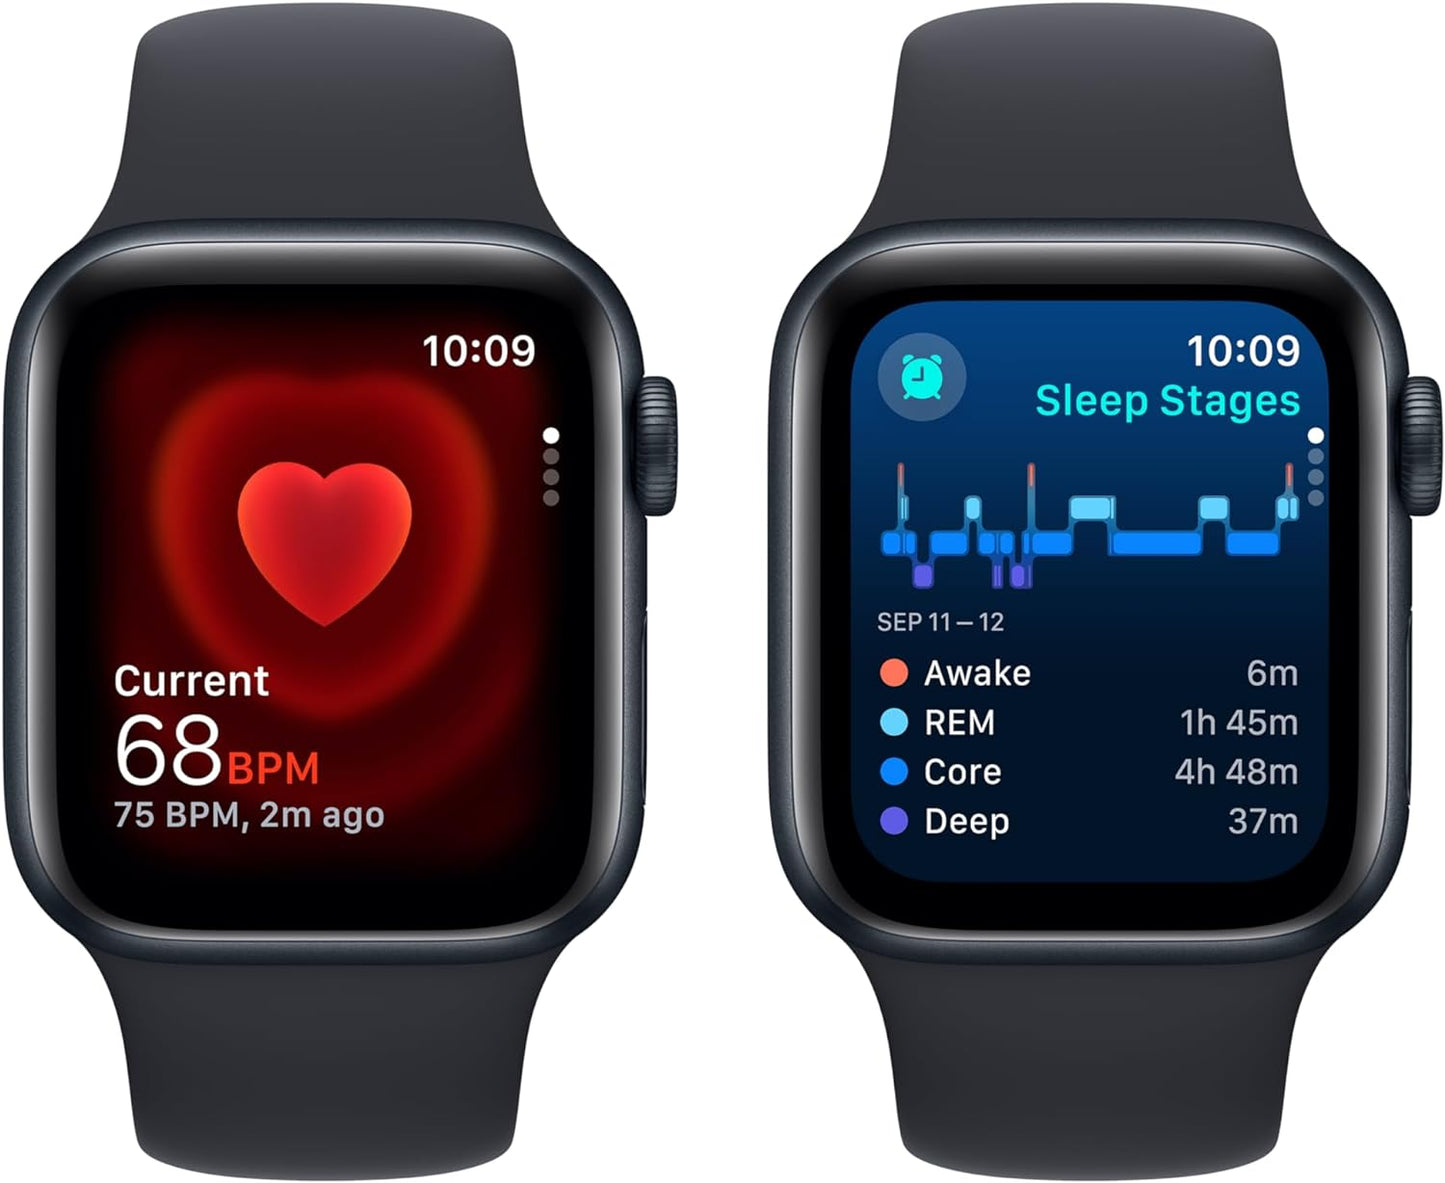 Apple Watch SE (الجيل الثاني) [GPS + Cellular 44mm] ساعة ذكية مع هيكل من الألومنيوم منتصف الليل مع حزام رياضي Midnight M/L. جهاز تتبع اللياقة البدنية والنوم، واكتشاف الأعطال، ومراقبة معدل ضربات القلب 